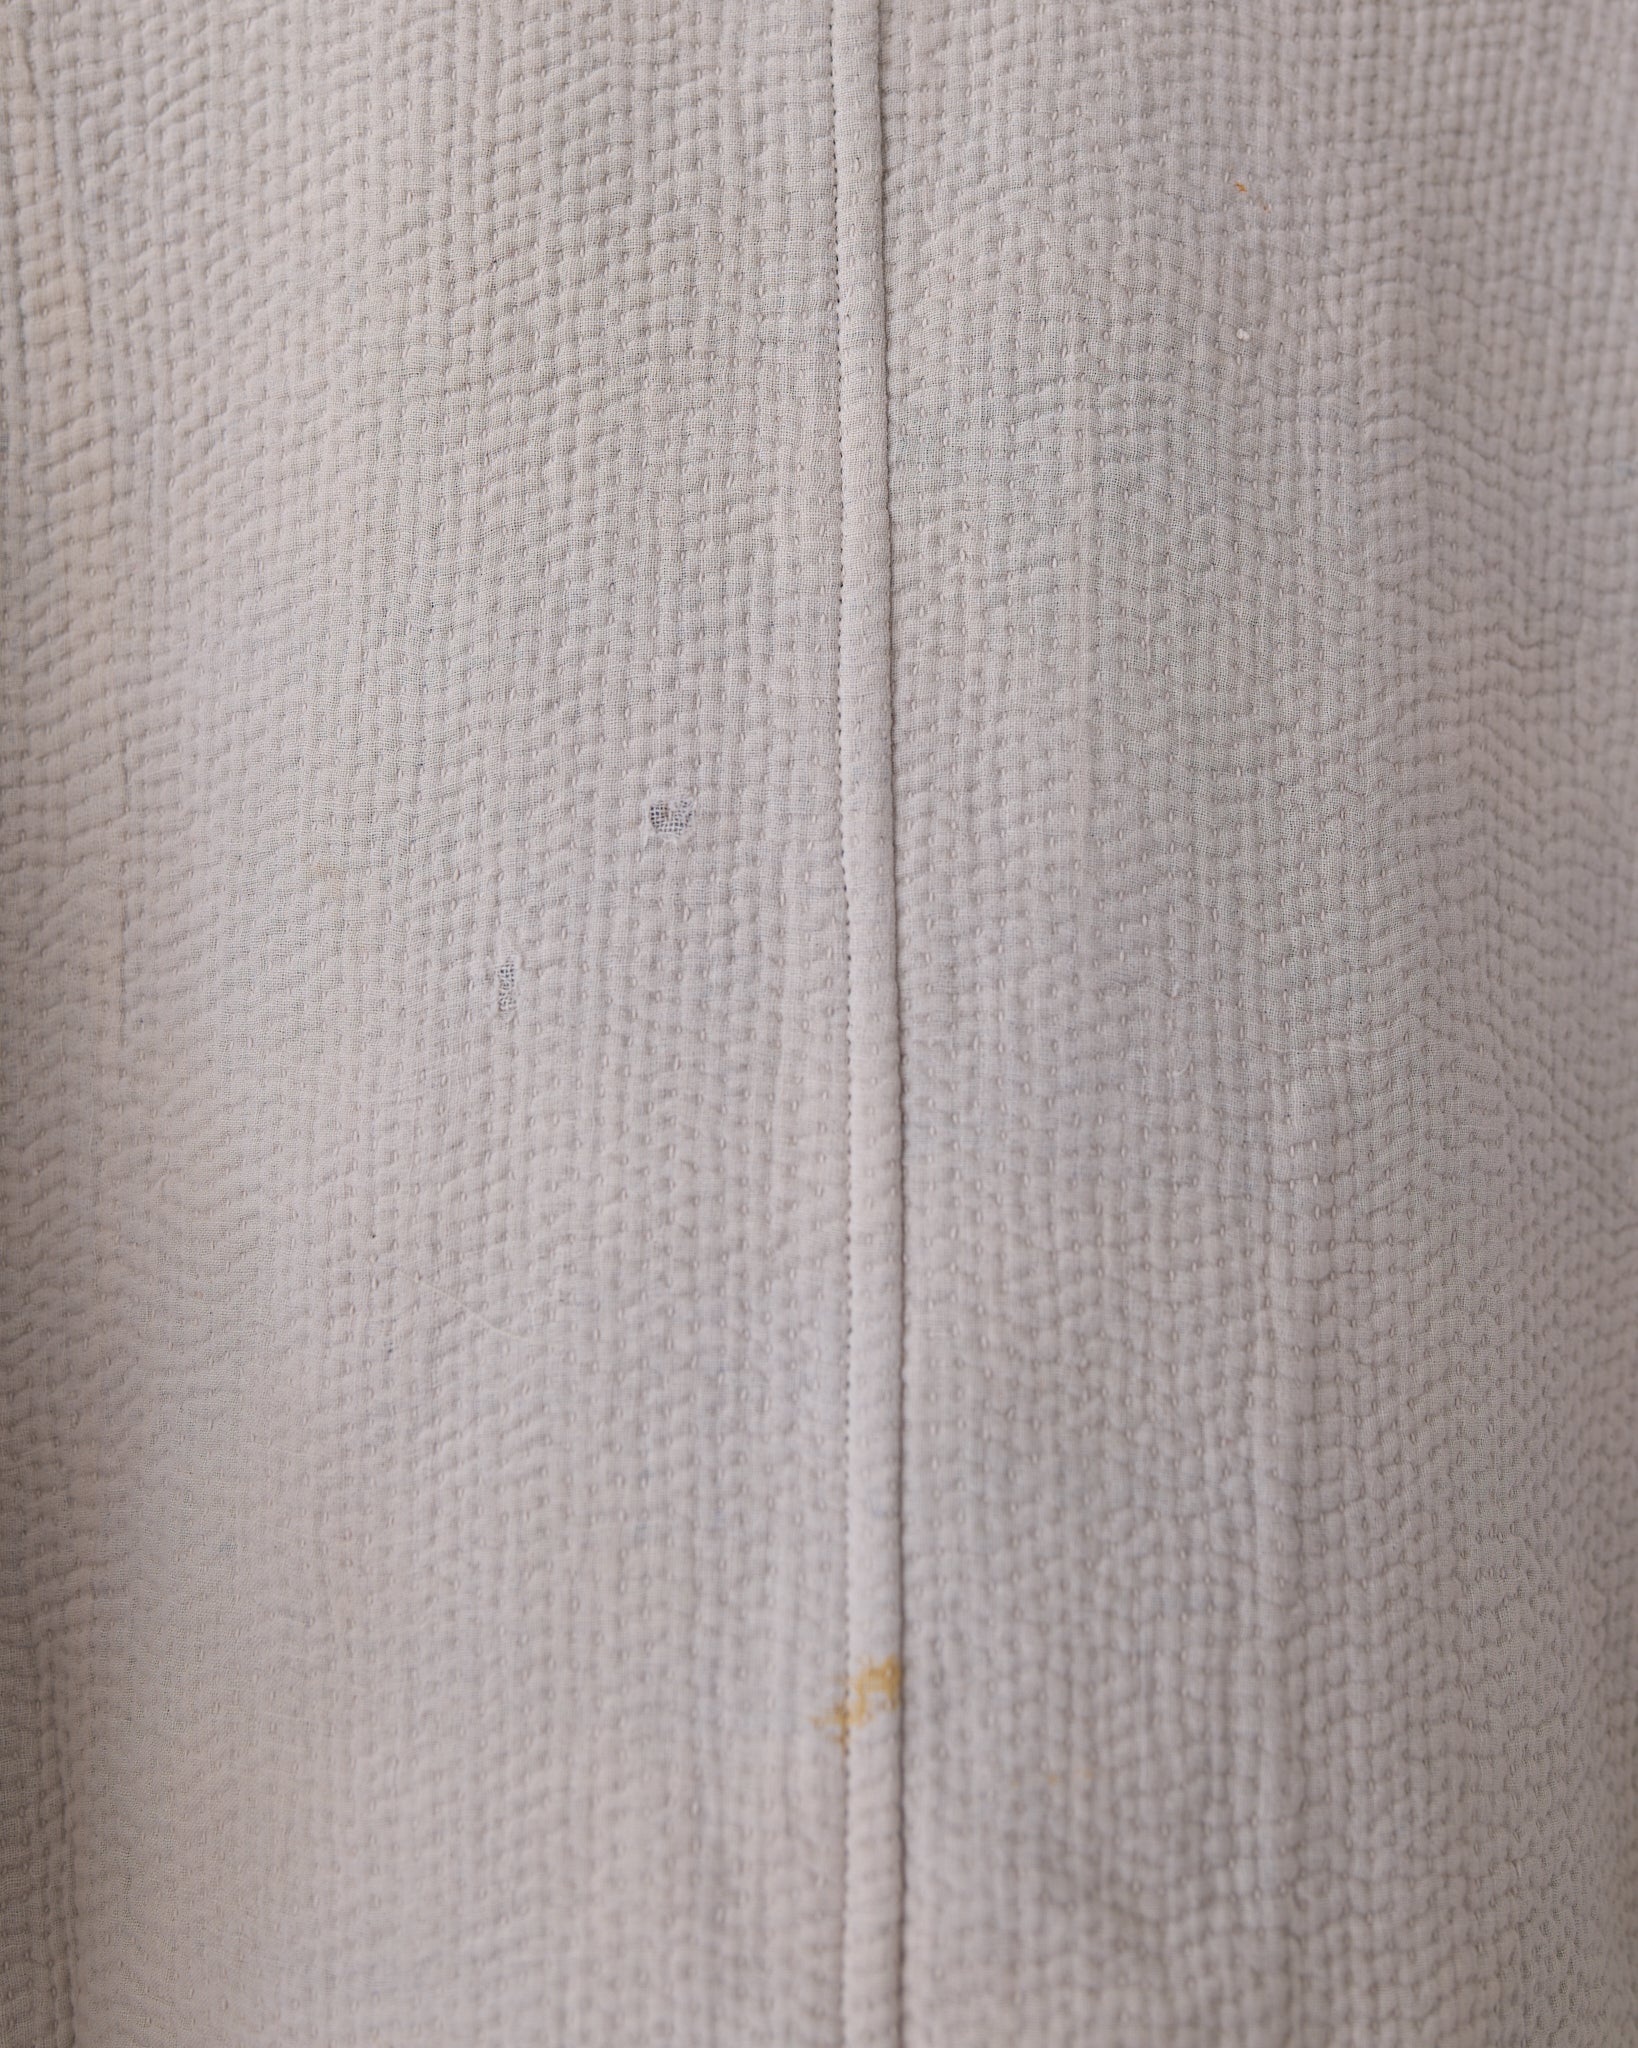 Chore Coat, Cotton Woven Vintage Kantha Quilt